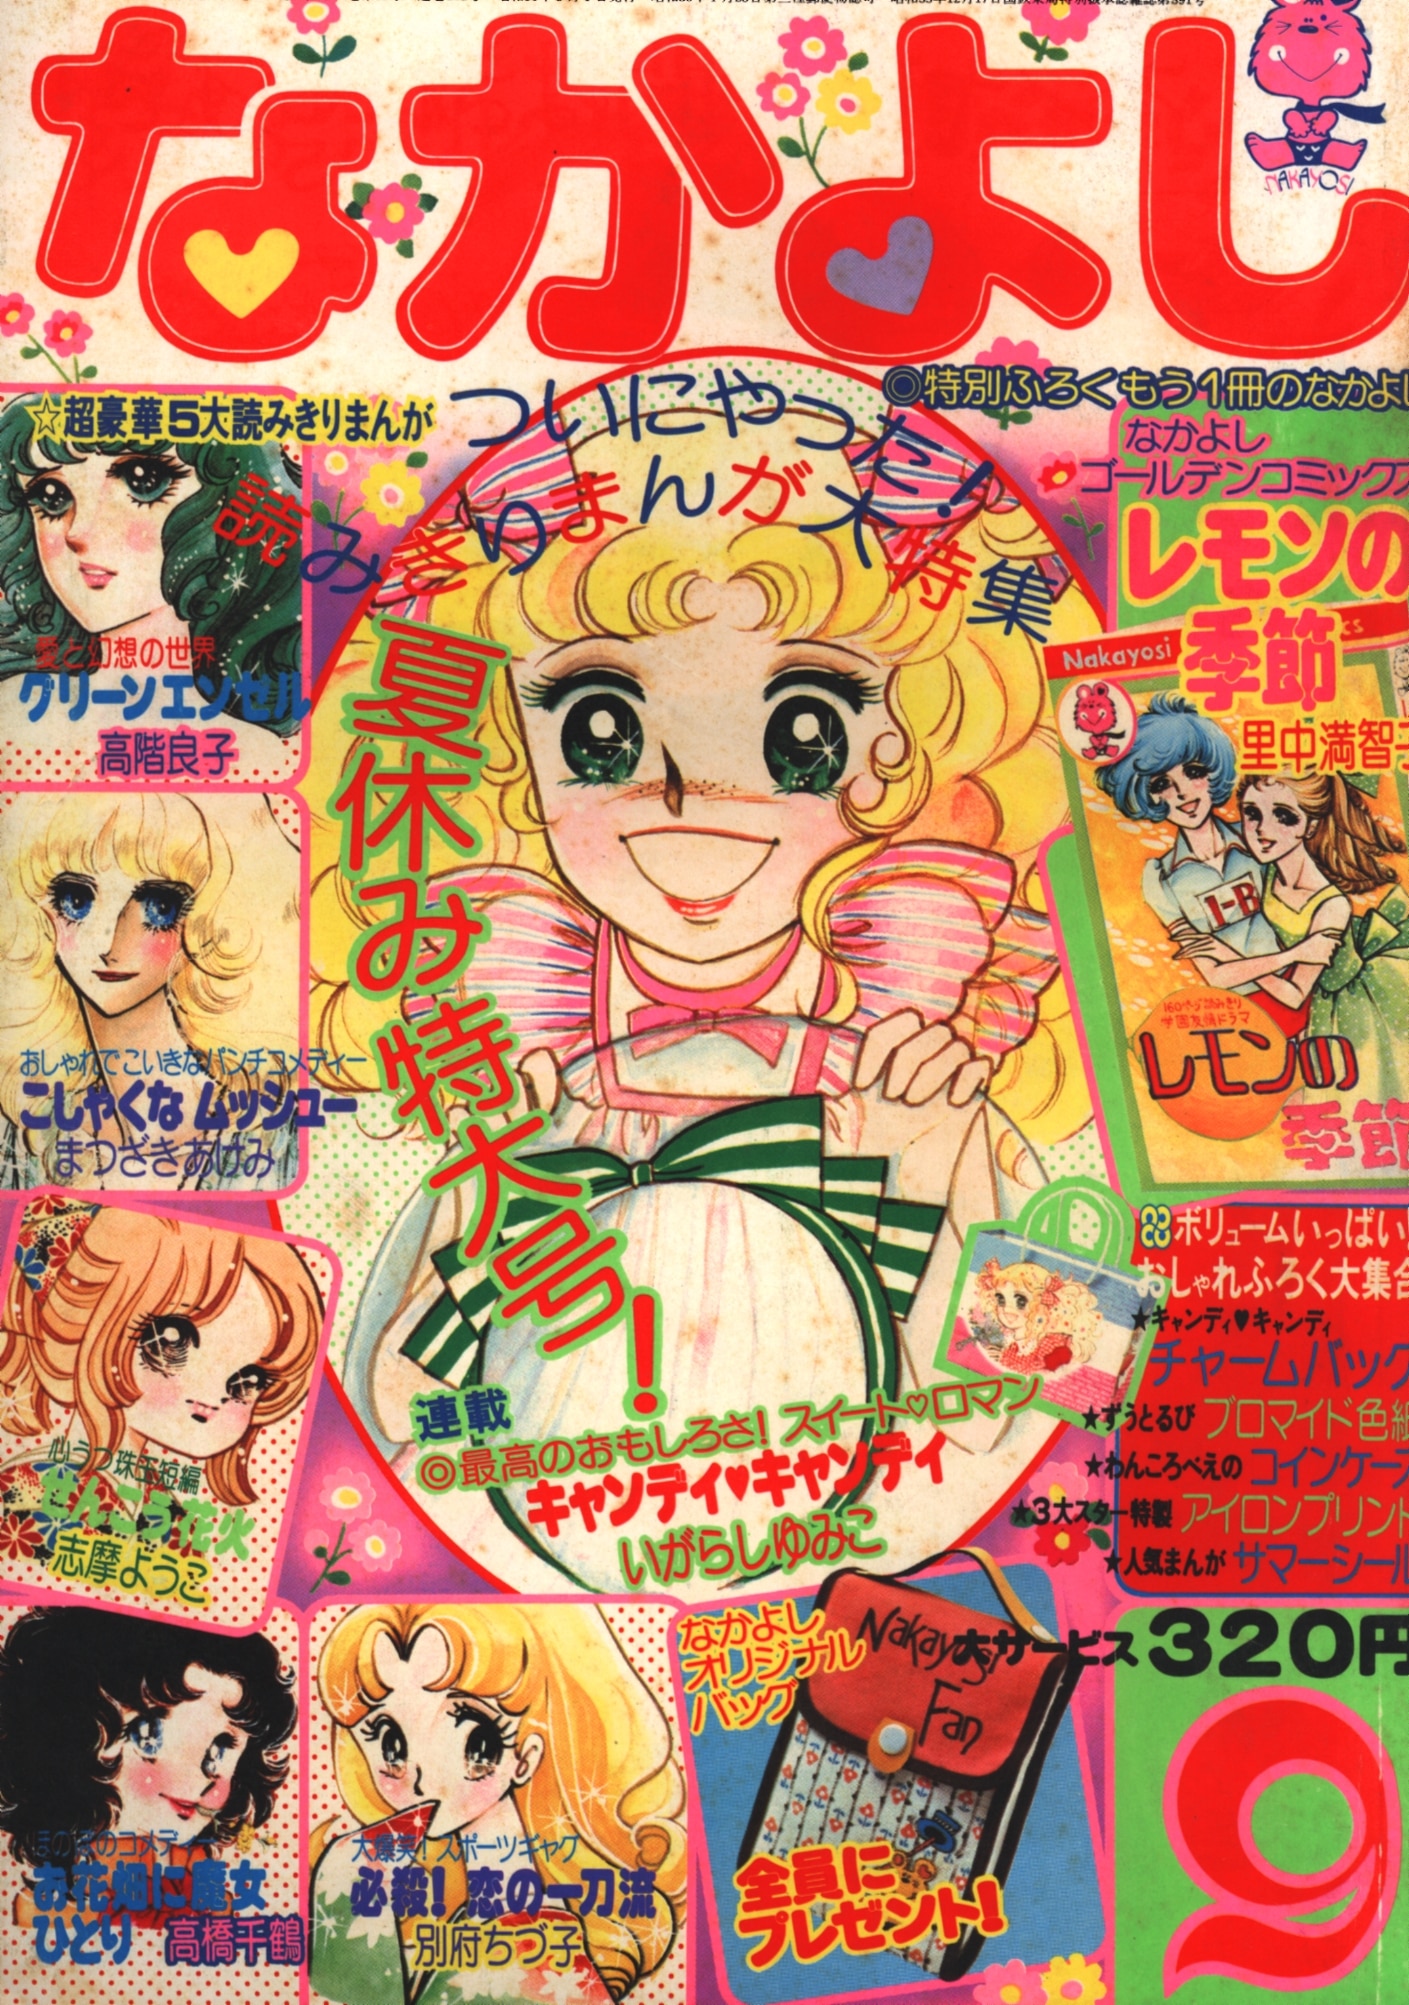 黒の迷宮松本洋子 コミックス 18冊 昭和 なかよし 少女漫画 レトロ